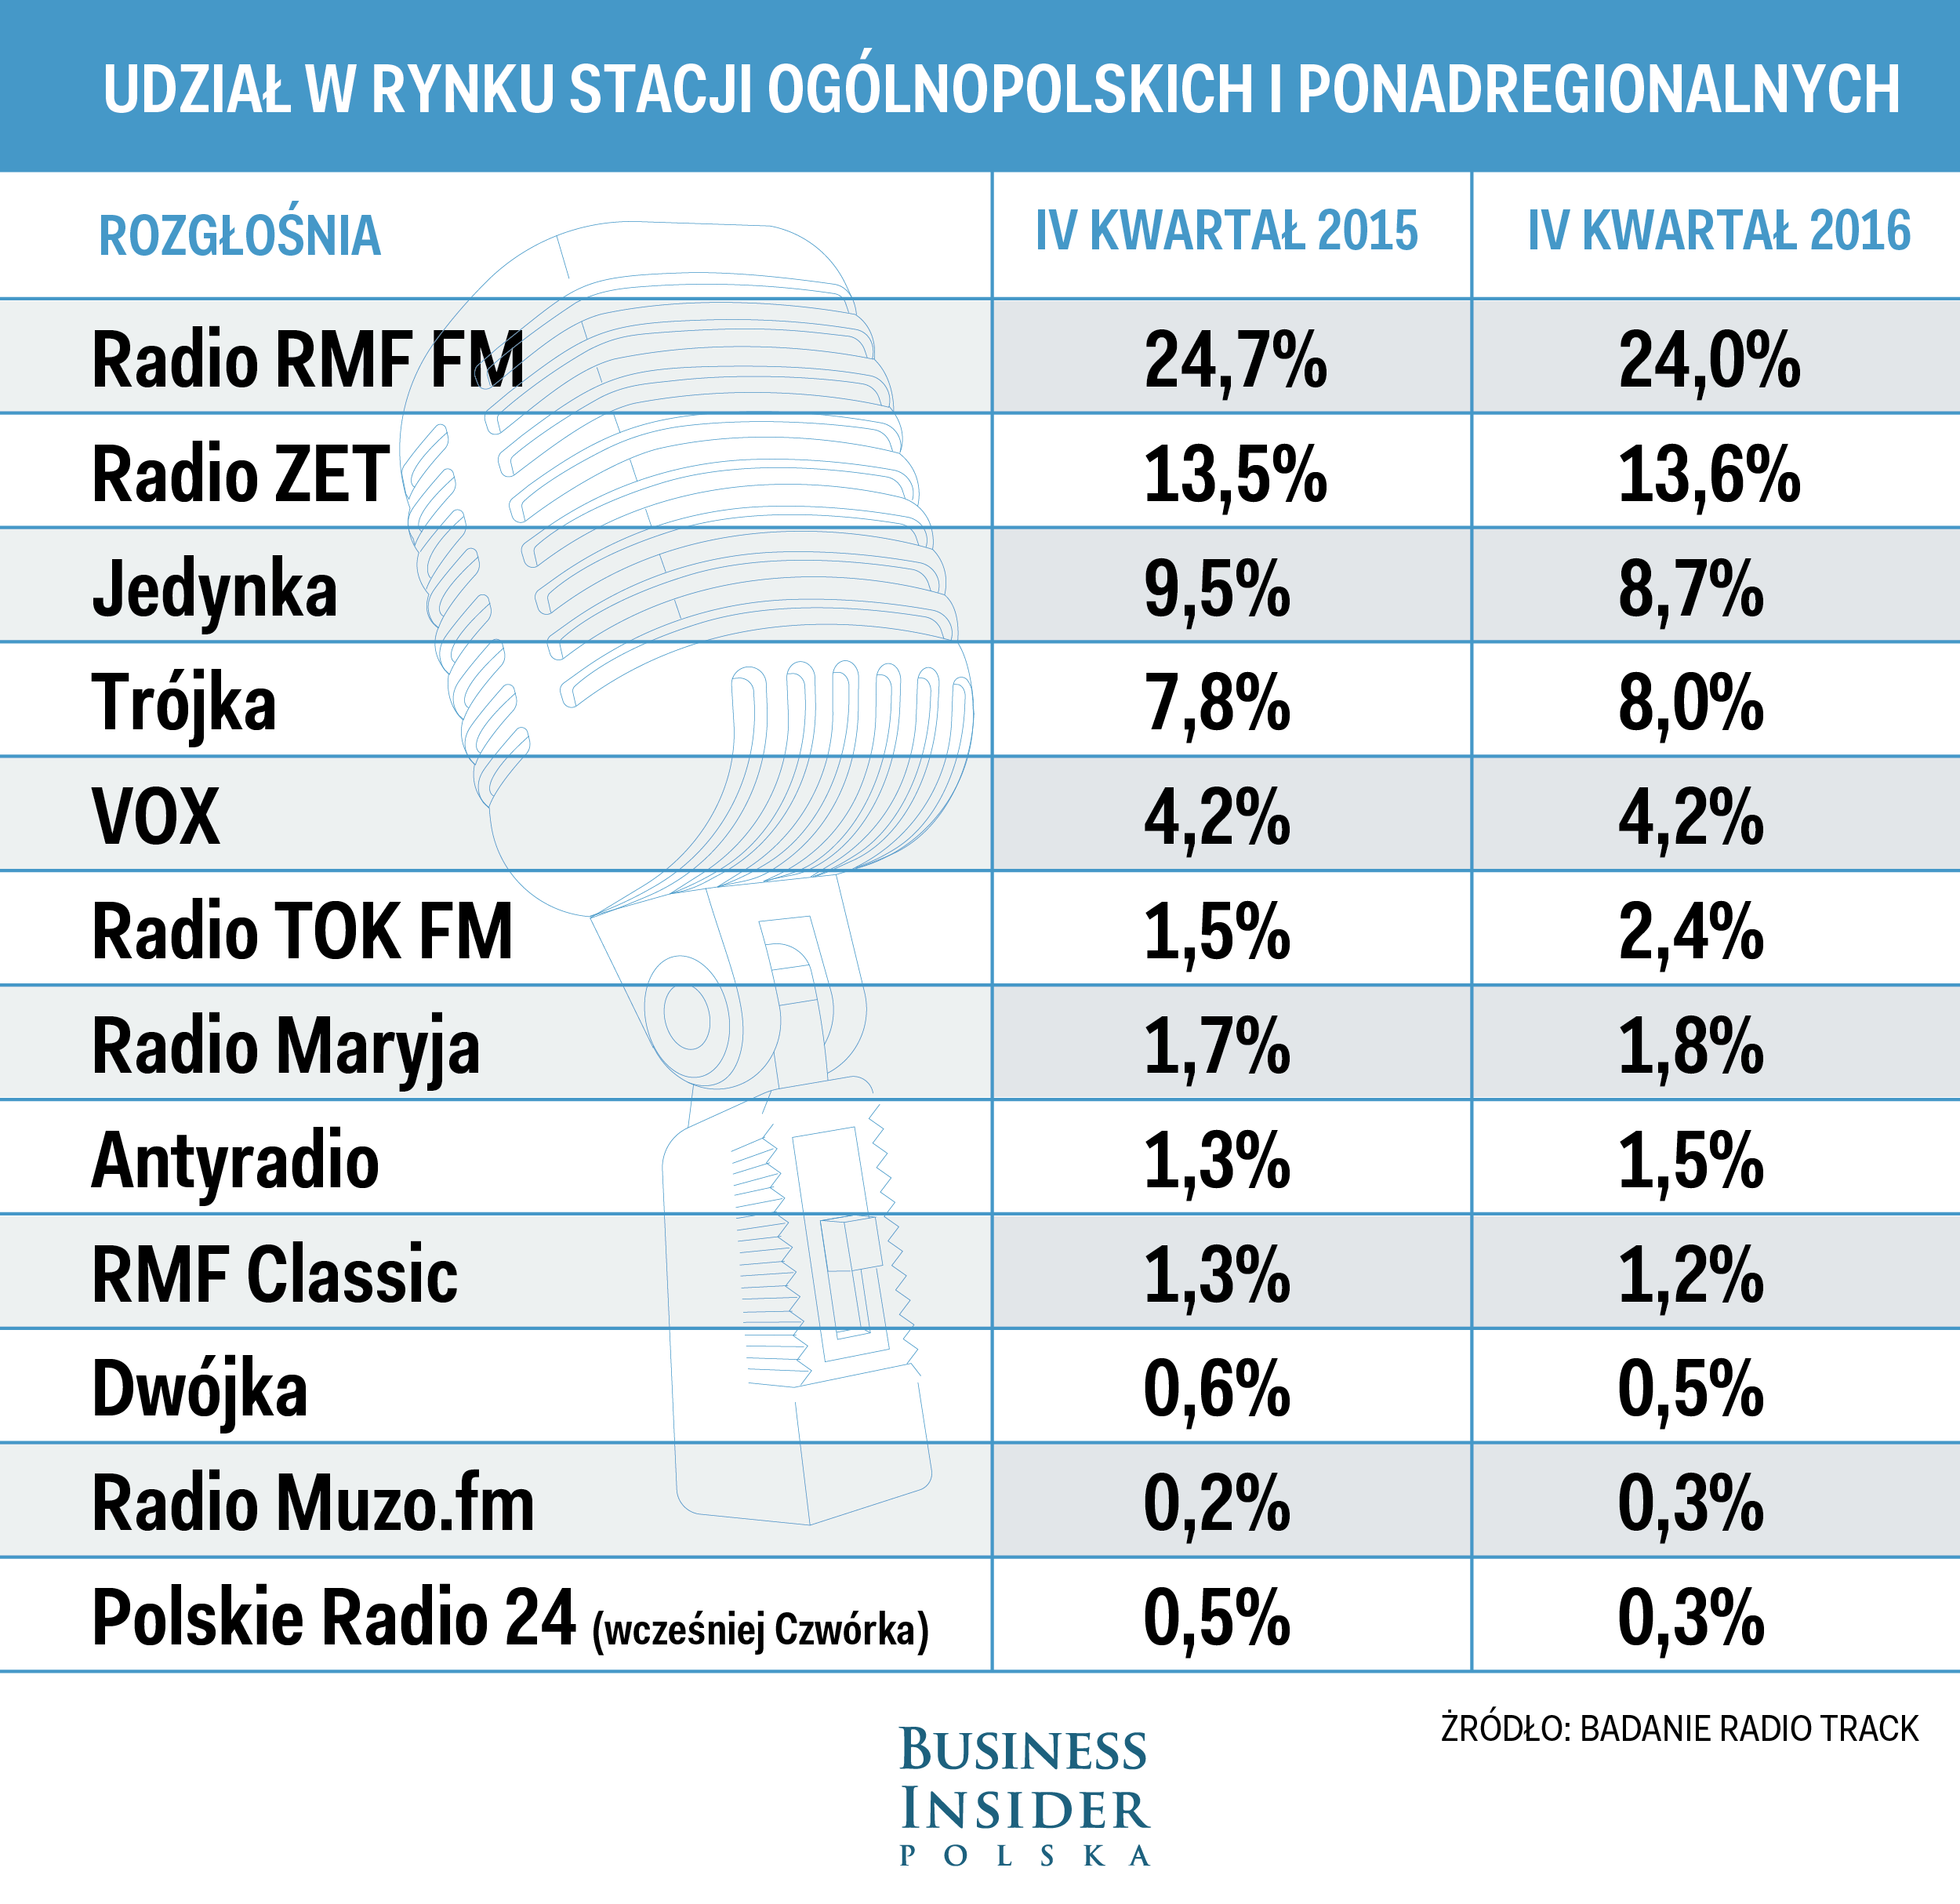 Słuchalność stacji radiowych w IV kwartale 2016 roku